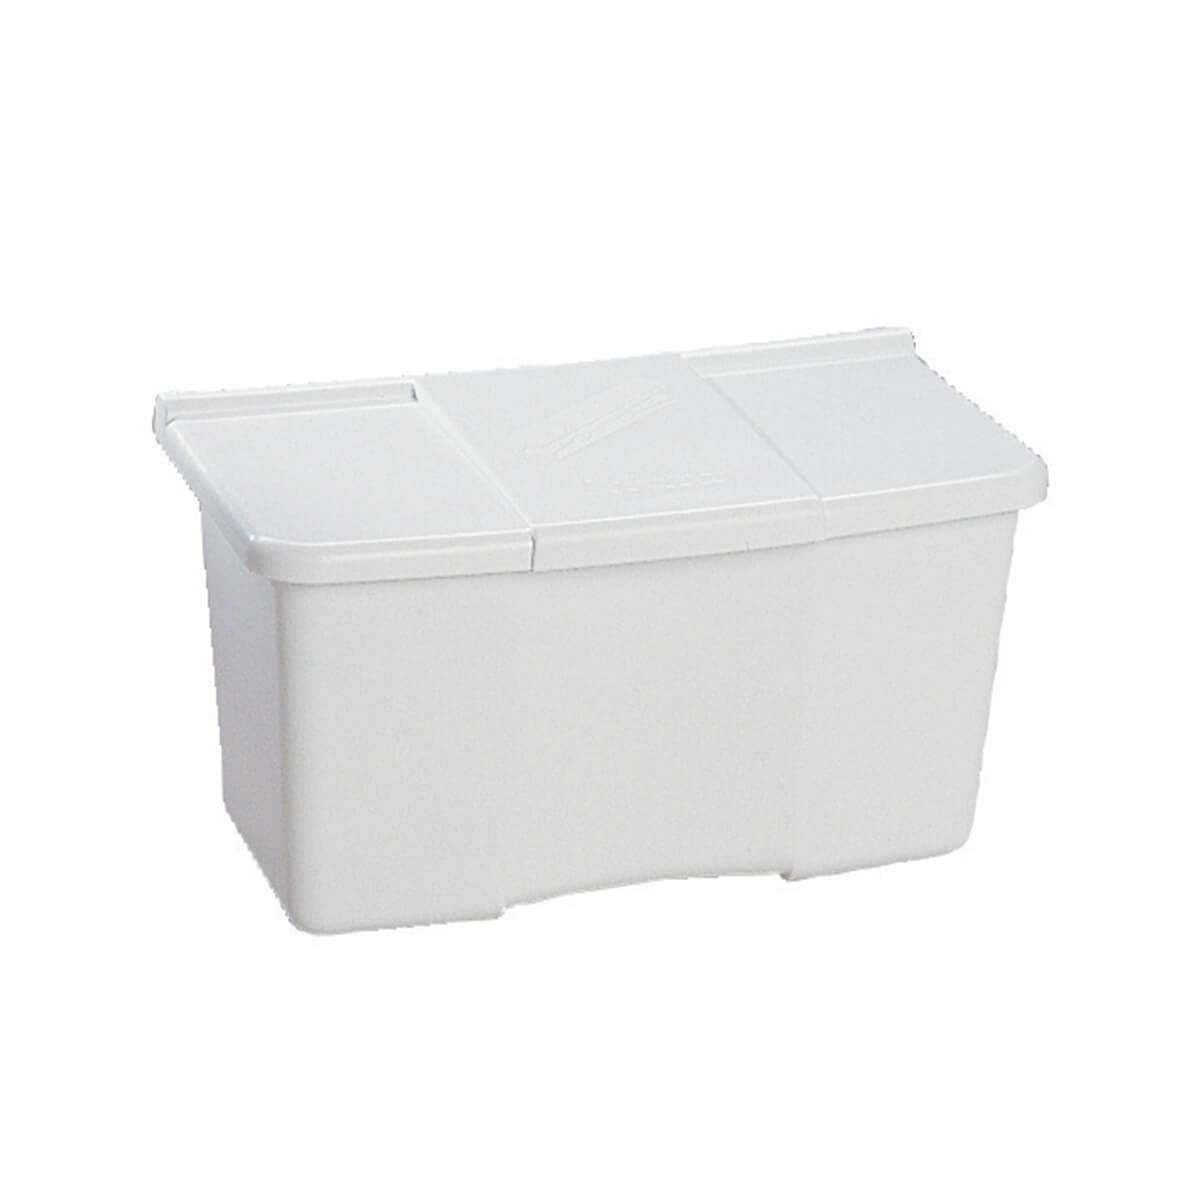 White Plastic Clothespin Box